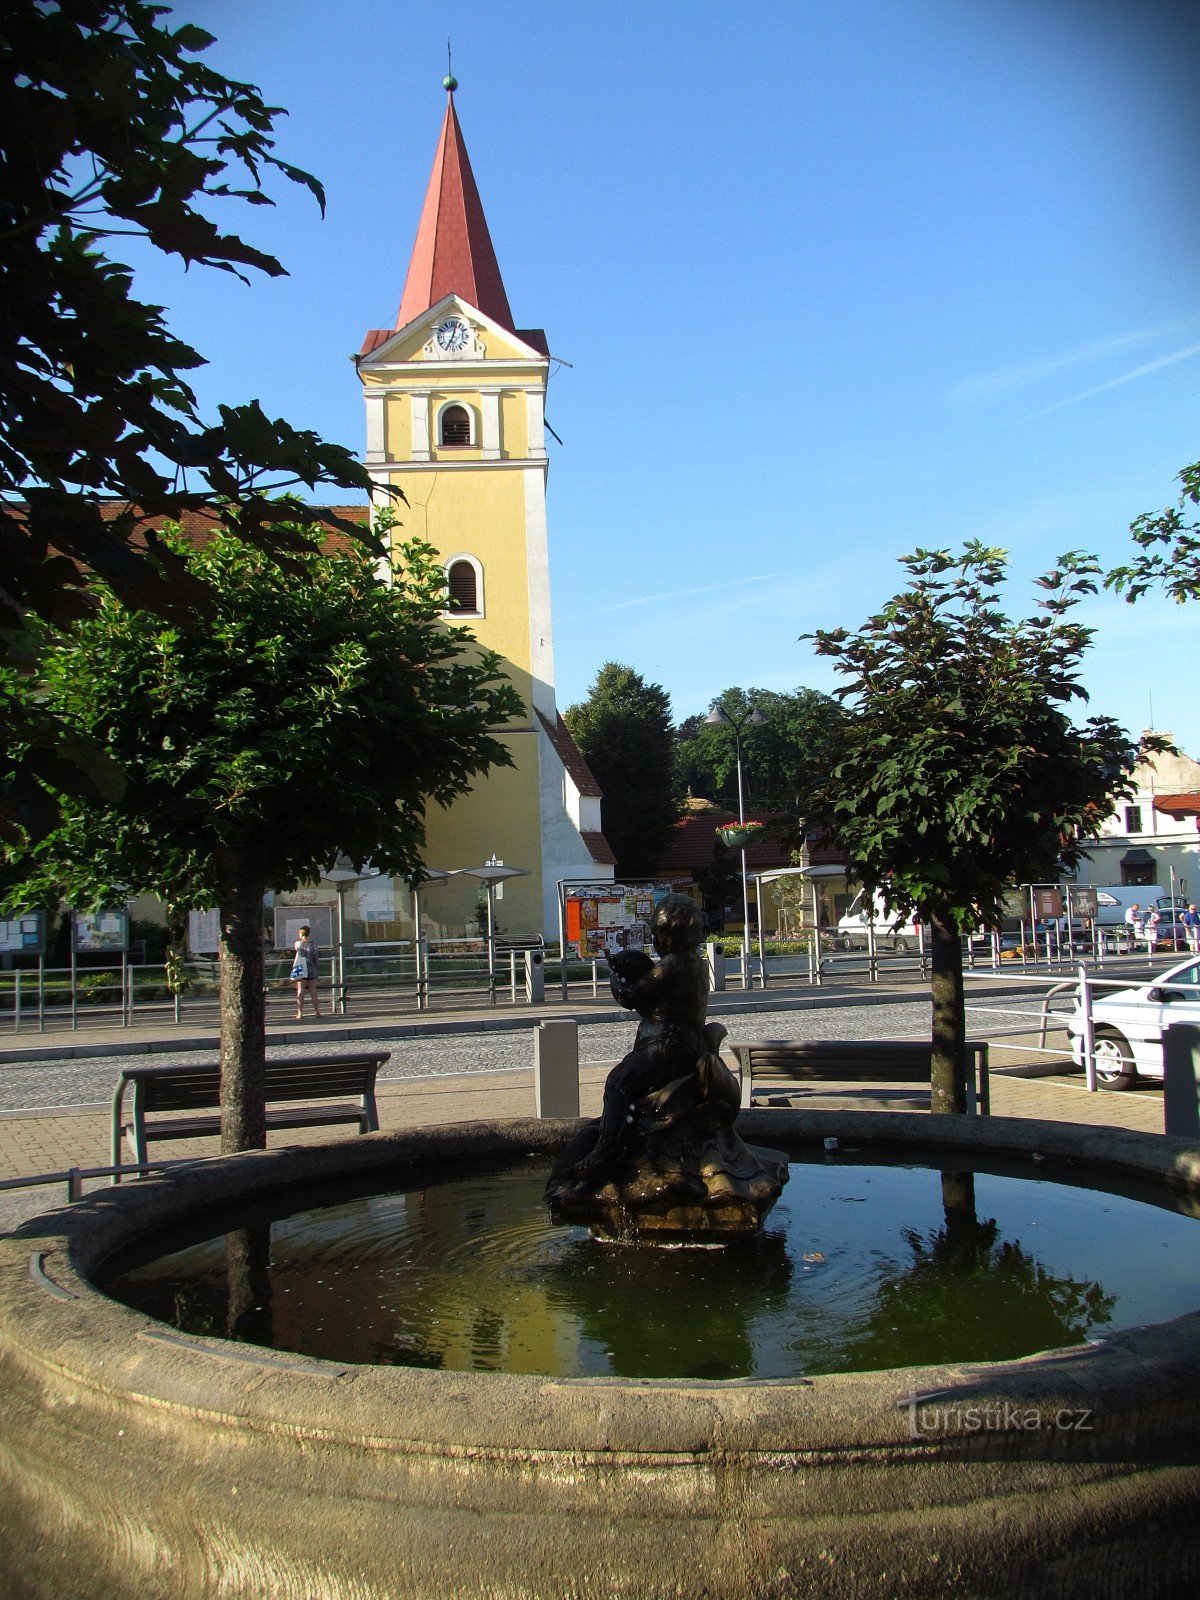 Koryčany - vodnjak in cerkev